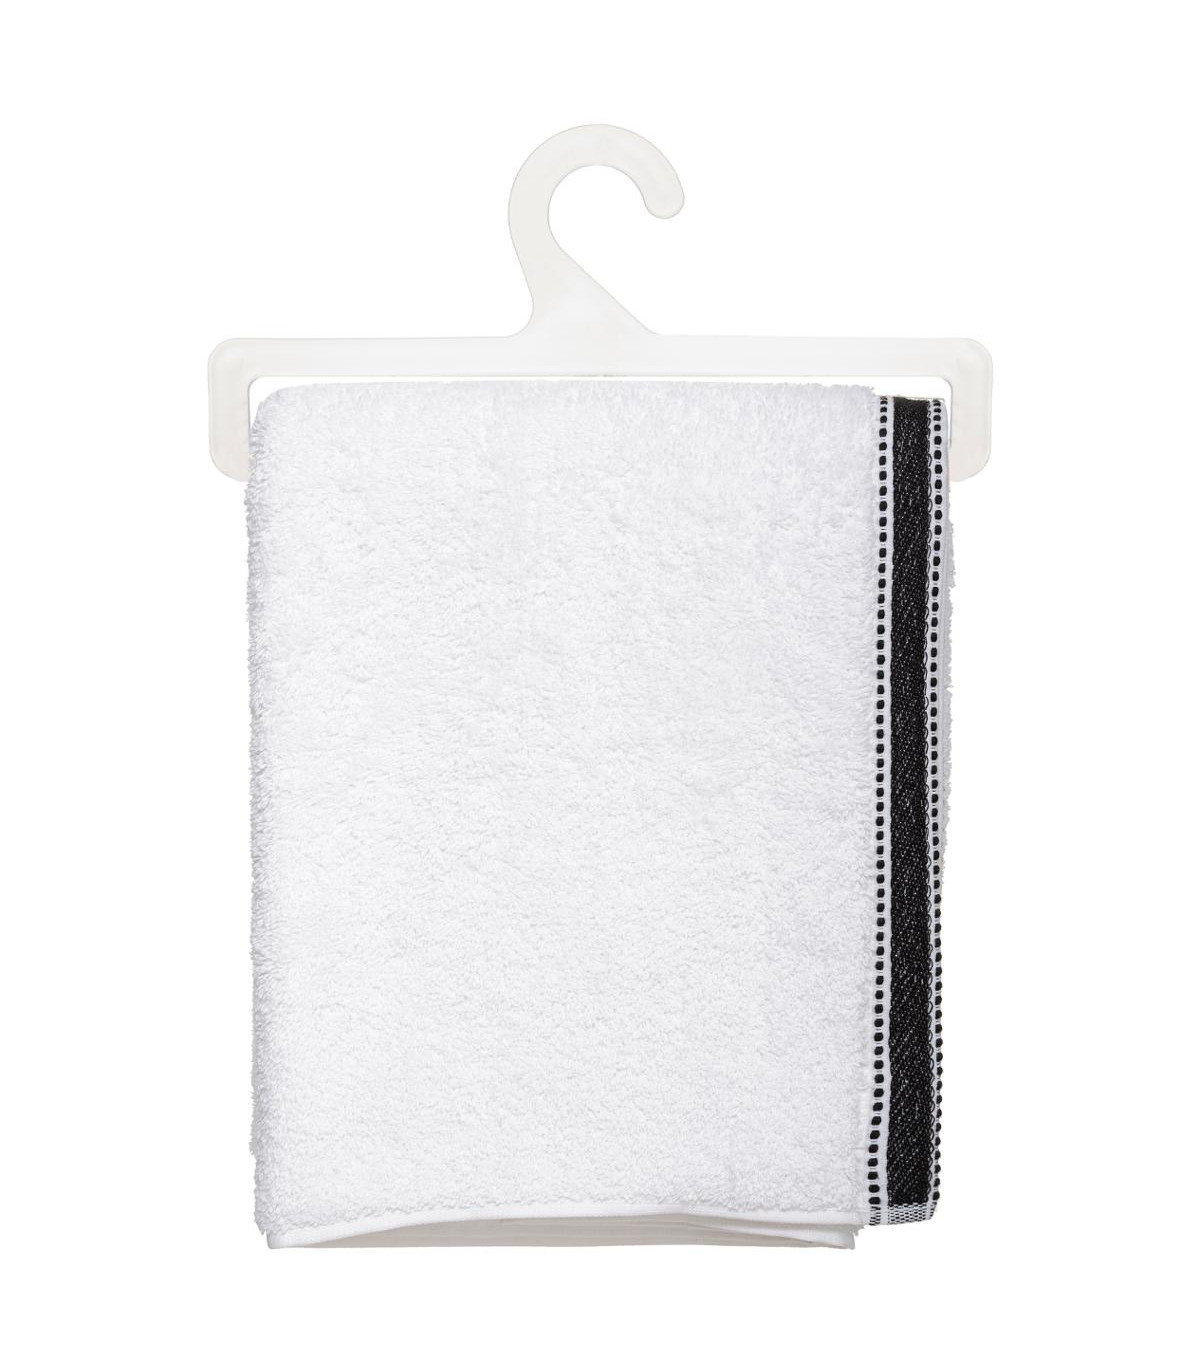 drap-de-douche-joia-blanc-tissu-eponge-70-x-130-cm (2)